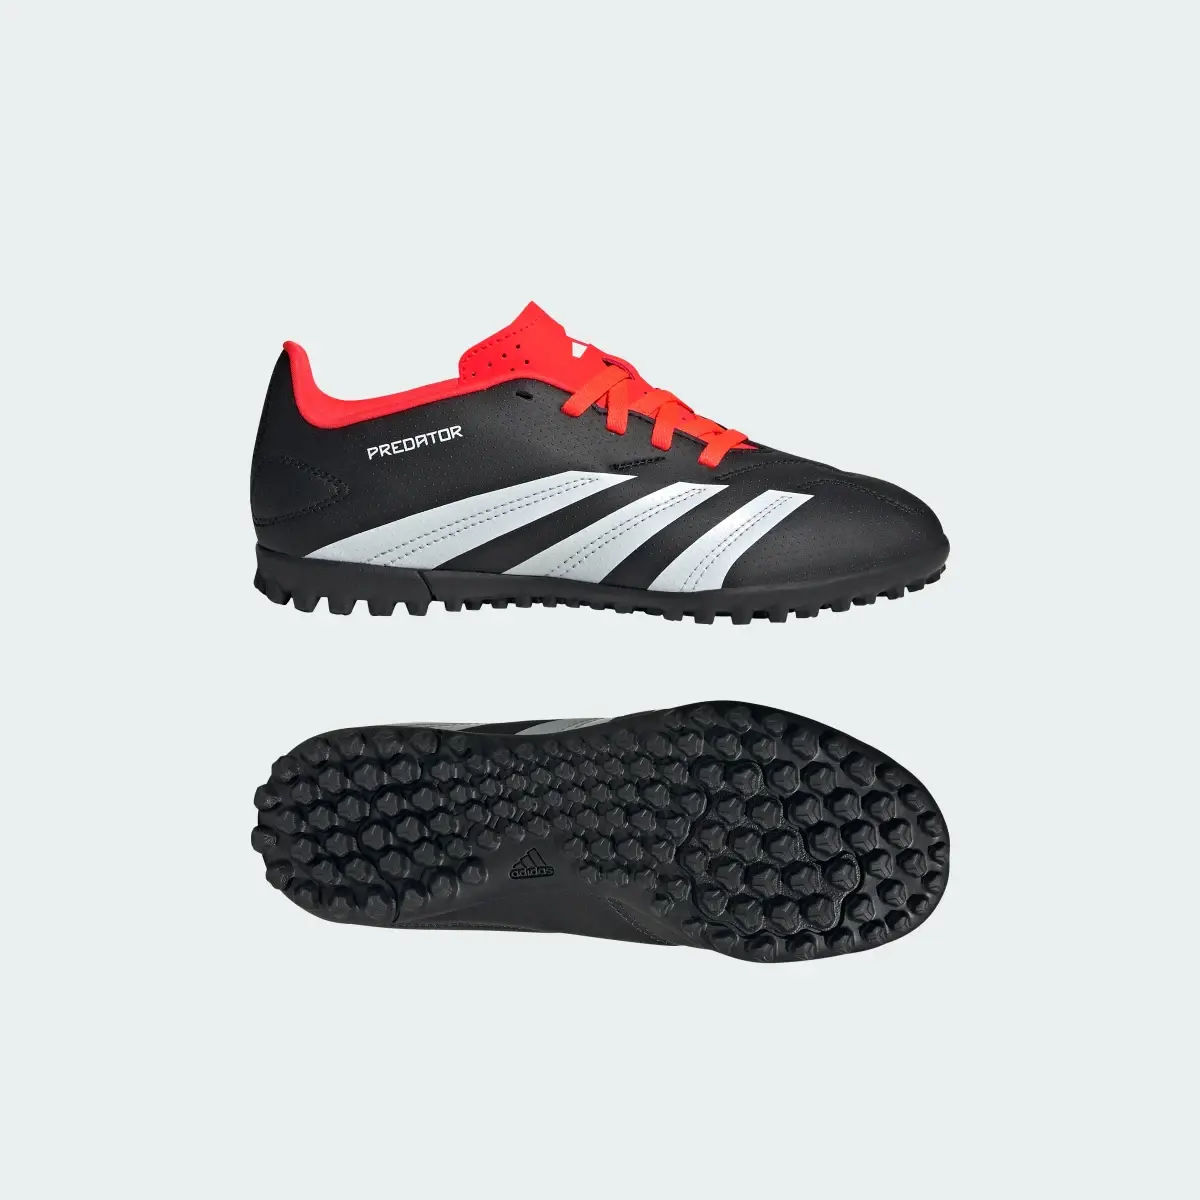 Adidas Predator Club Turf Football Boots. 1